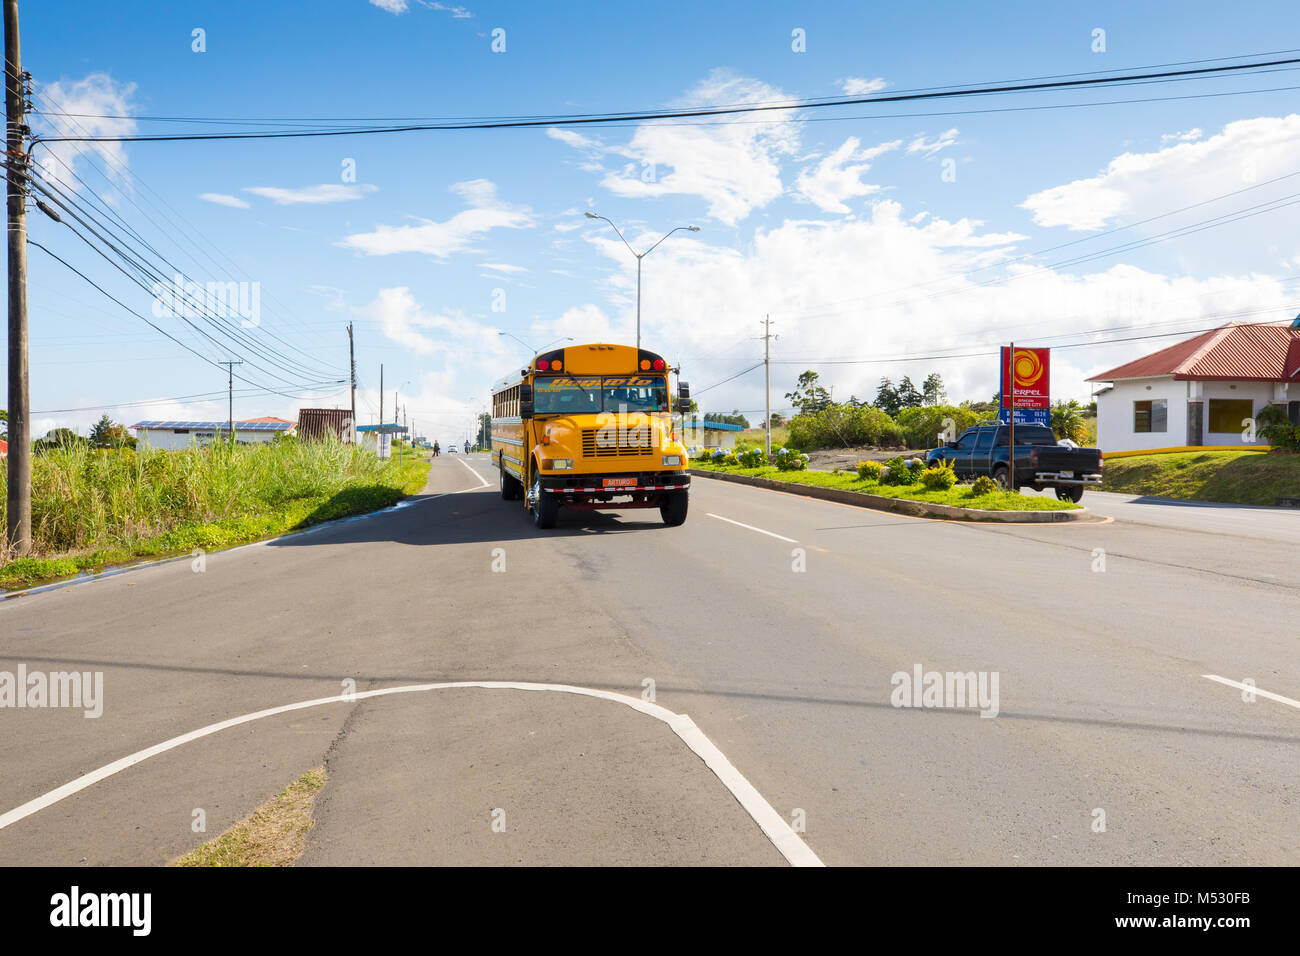 a bus called diablo in Alto Boquete Panama Stock Photo